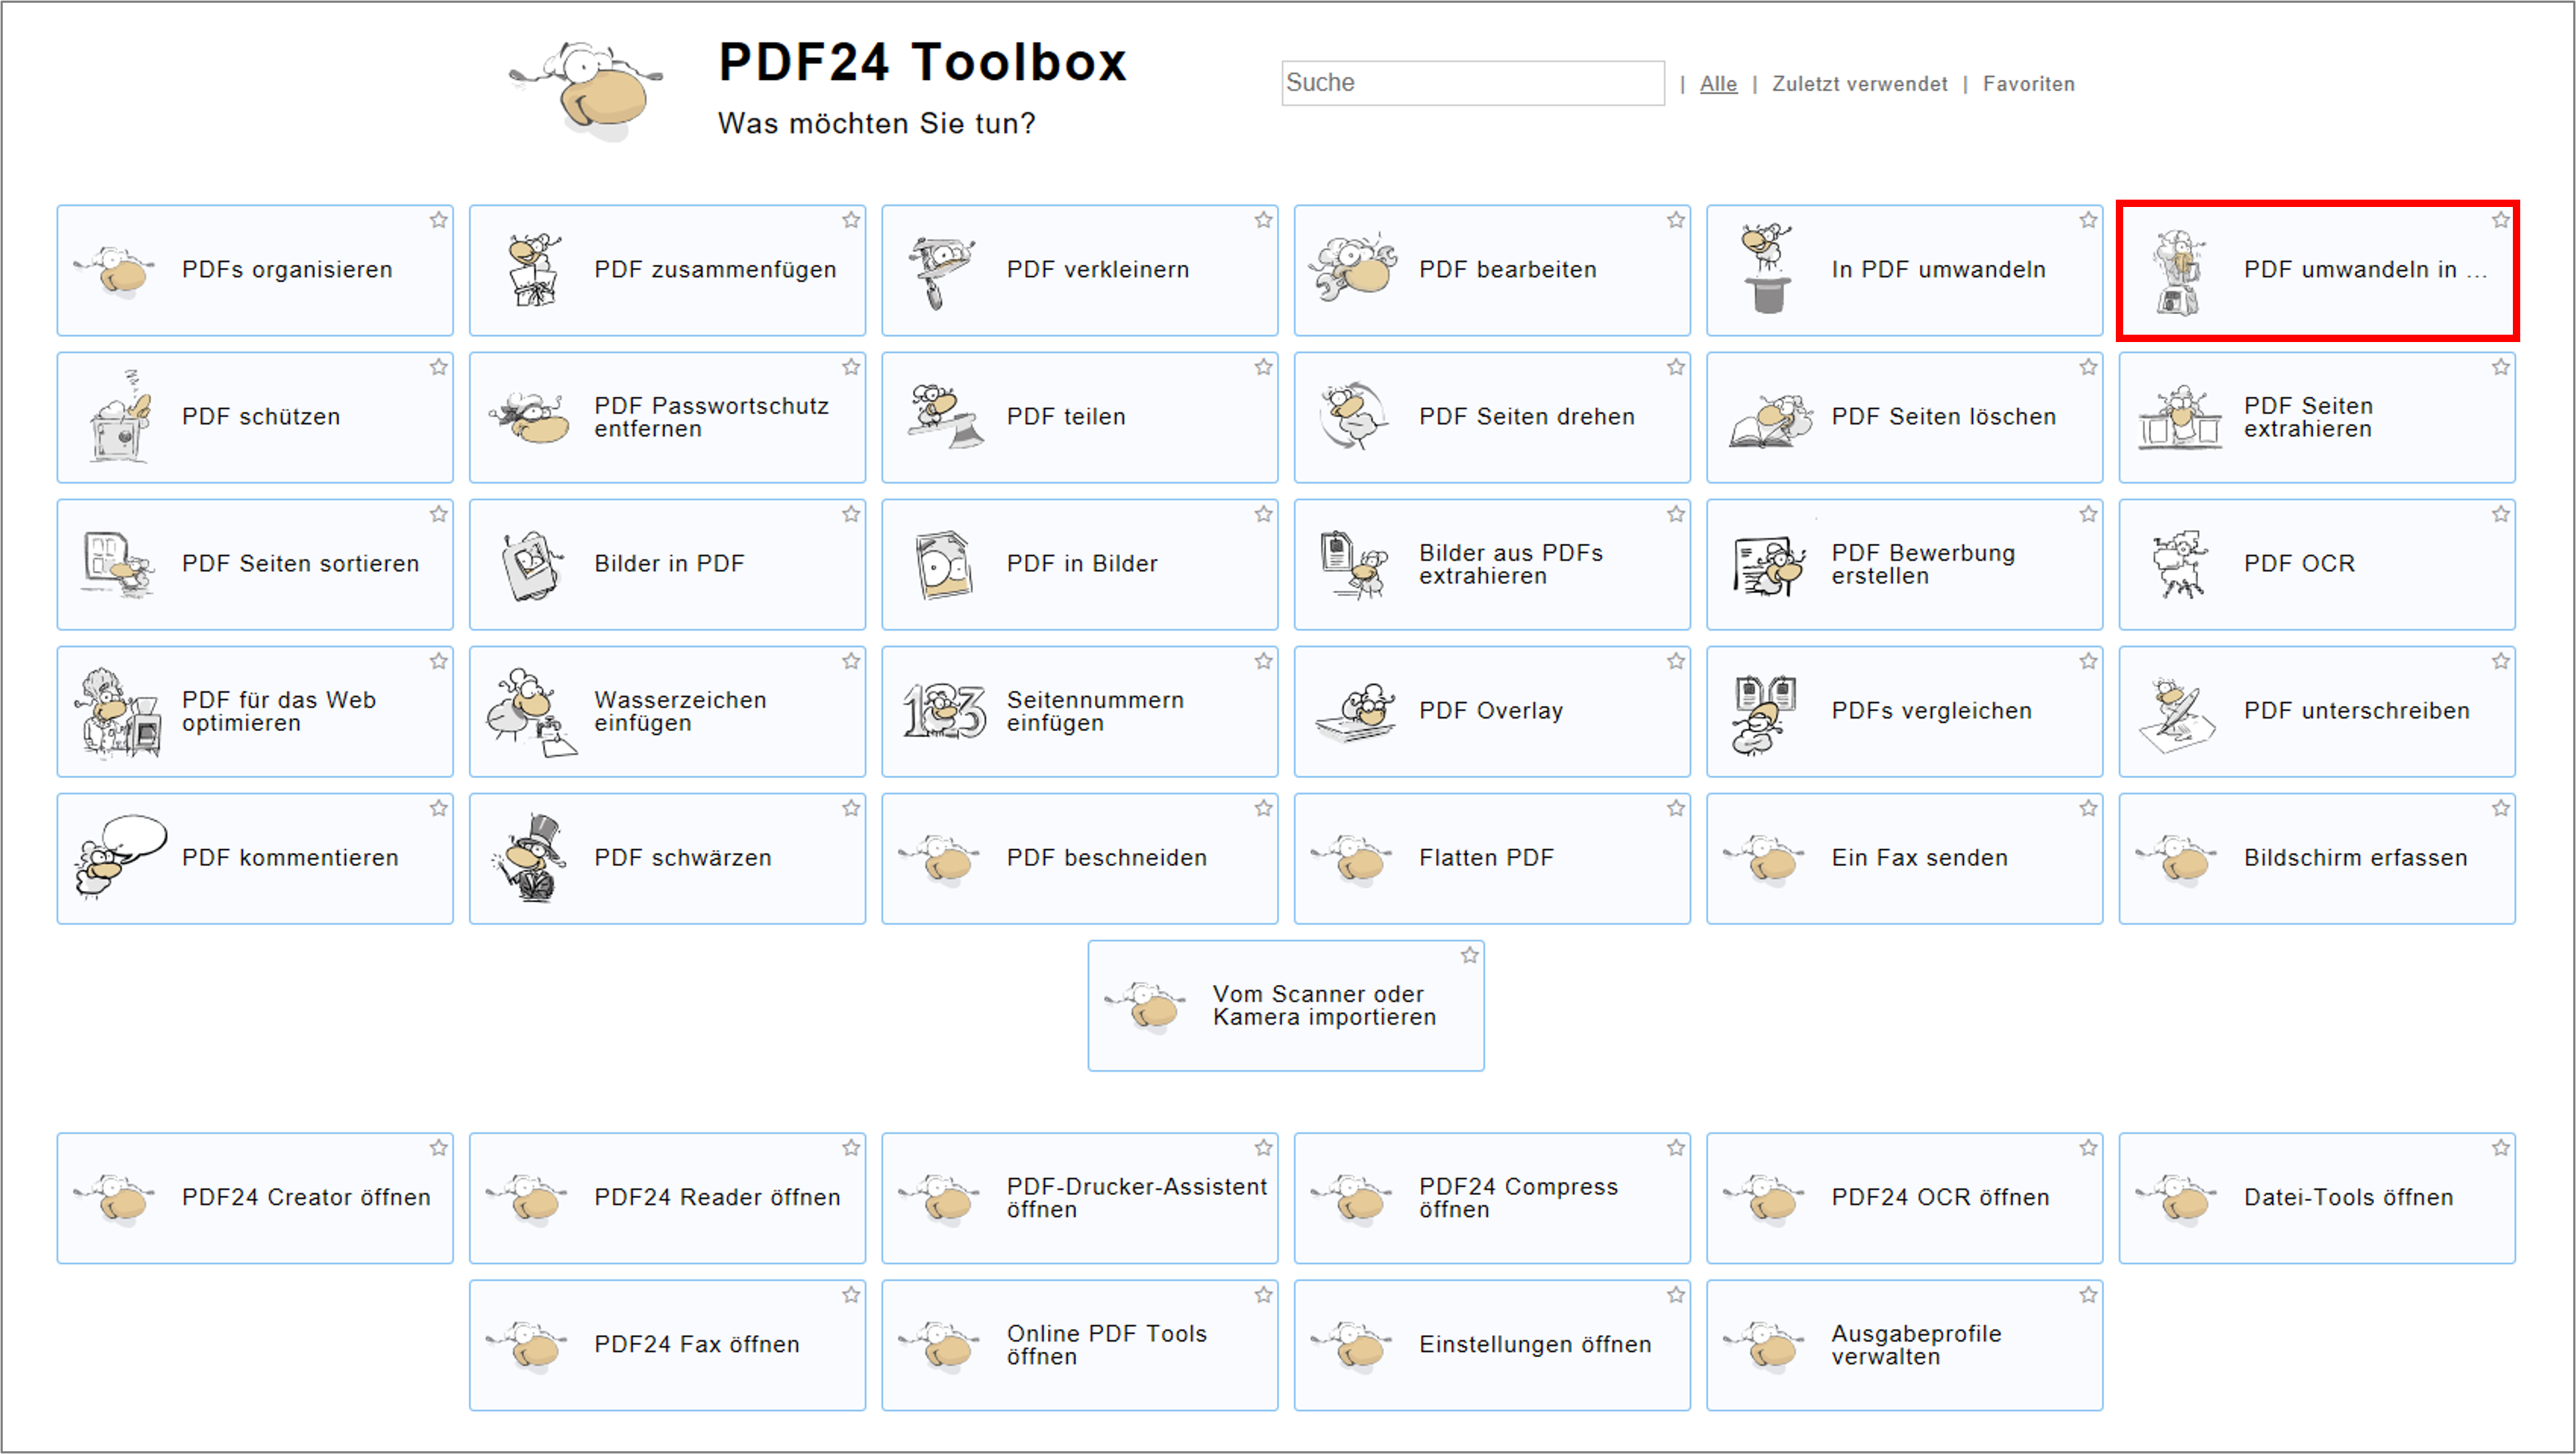 Die App PDF24 Creator bietet mehrere Möglichkeiten der Bearbeitung von PDF. Unter "PDF umwandeln in..." kann man ein PDF umwandeln.